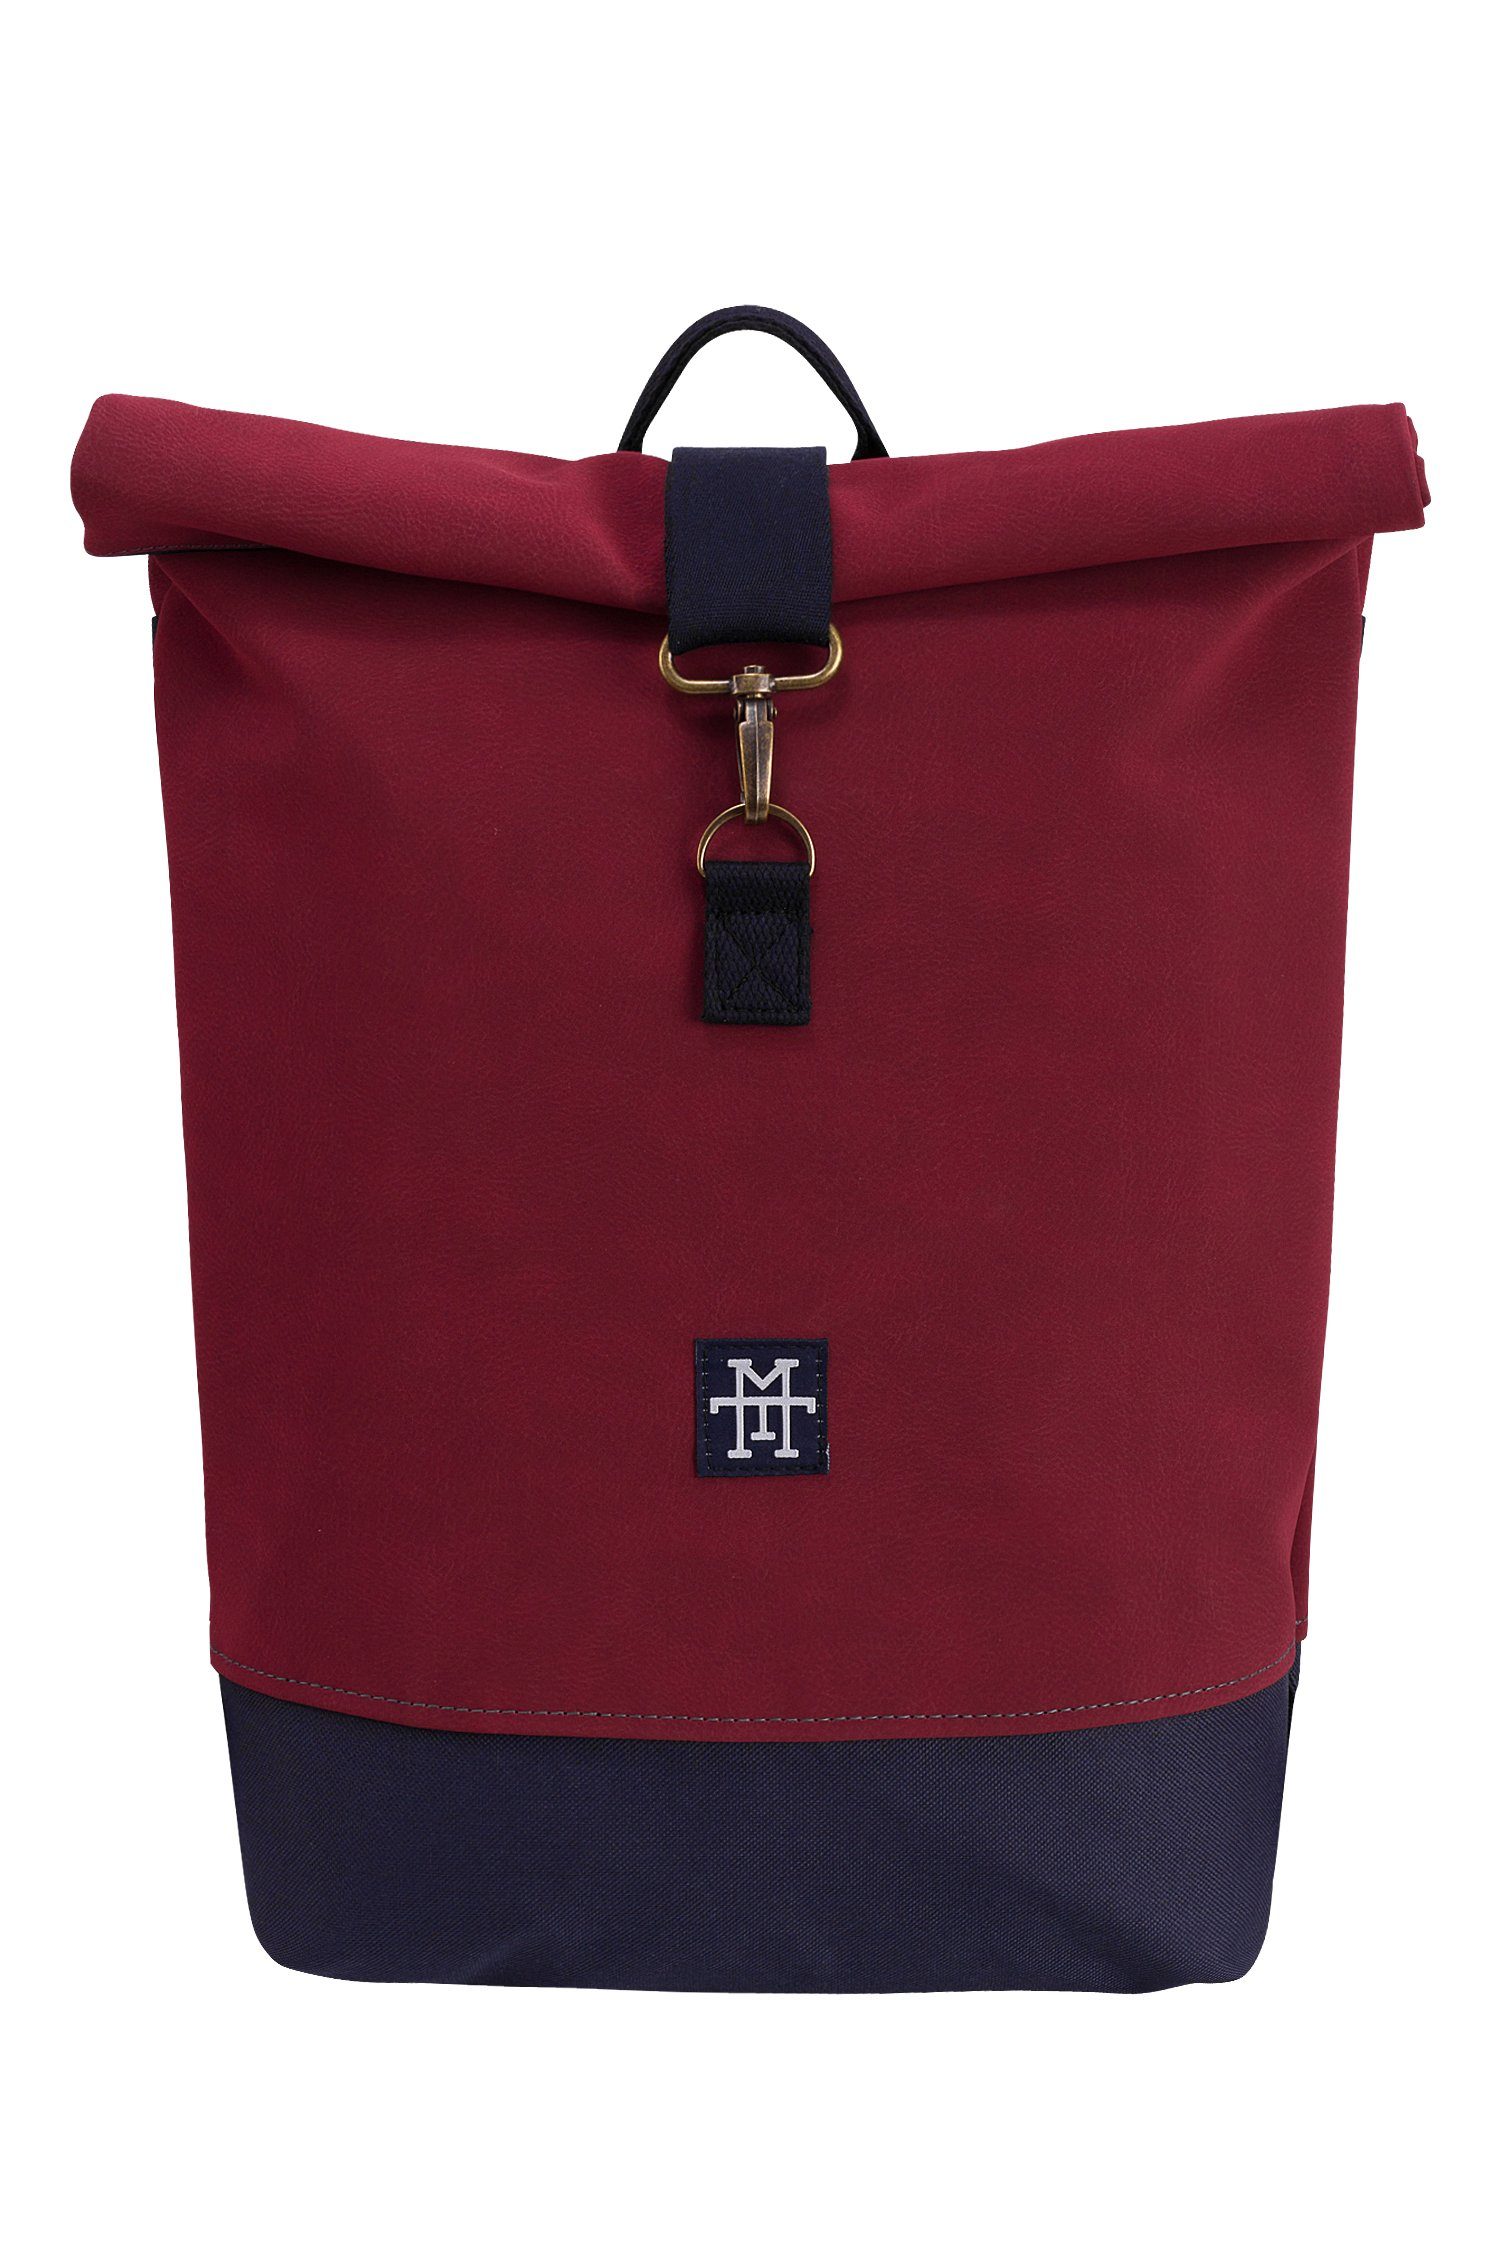 Manufaktur13 Tagesrucksack Mini Roll-Top Backpack - Rucksack mit Rollverschluss, wasserdicht/wasserabweisend, verstellbare Gurte Bordeaux